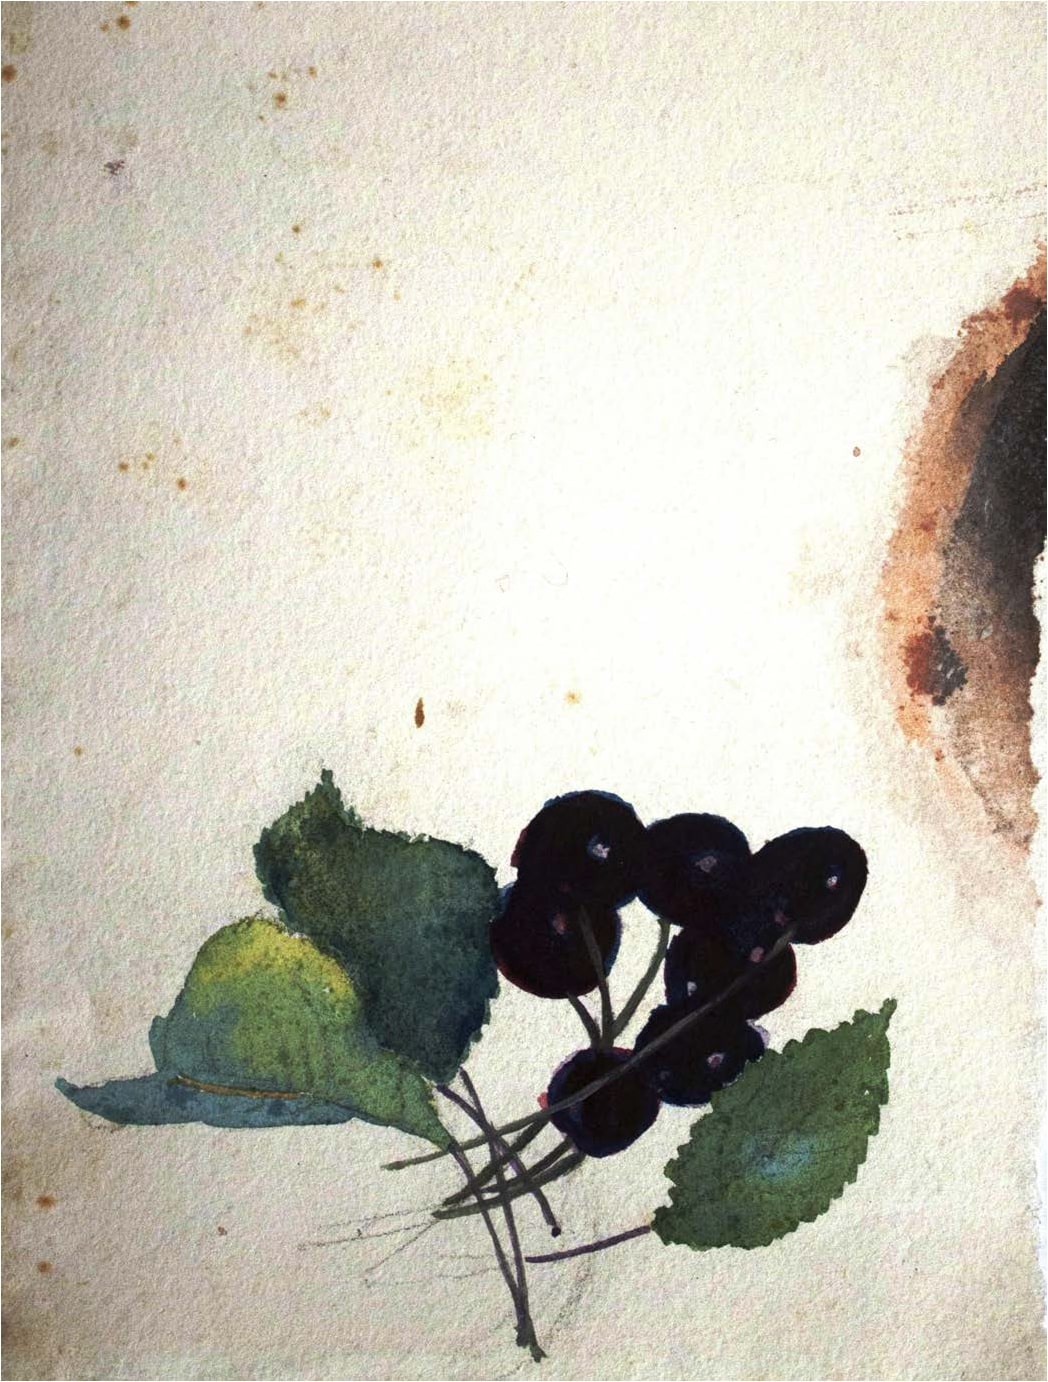 აკვარელი. ქაღალდი, 18X13სმ. შალვა ამირანაშვილის სახელობის ხელოვნების სახელმწიფო მუზეუმიშალვა ამირანაშვილის სახელობის ხელოვნების სახელმწიფო მუზეუმი